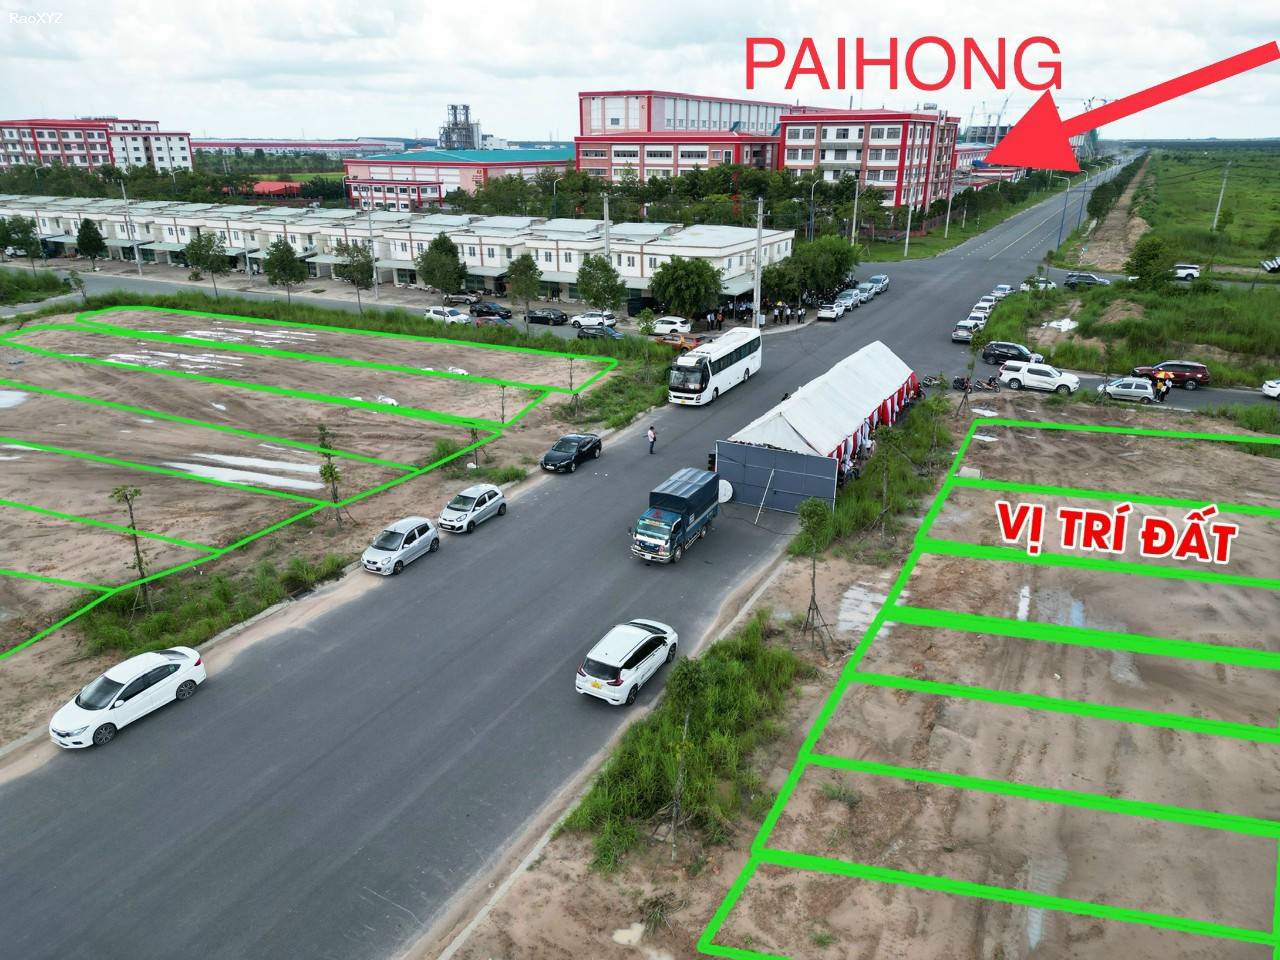 Đất nền tại khu đô thị Elite Town đối diện Paihong Bàu Bàng